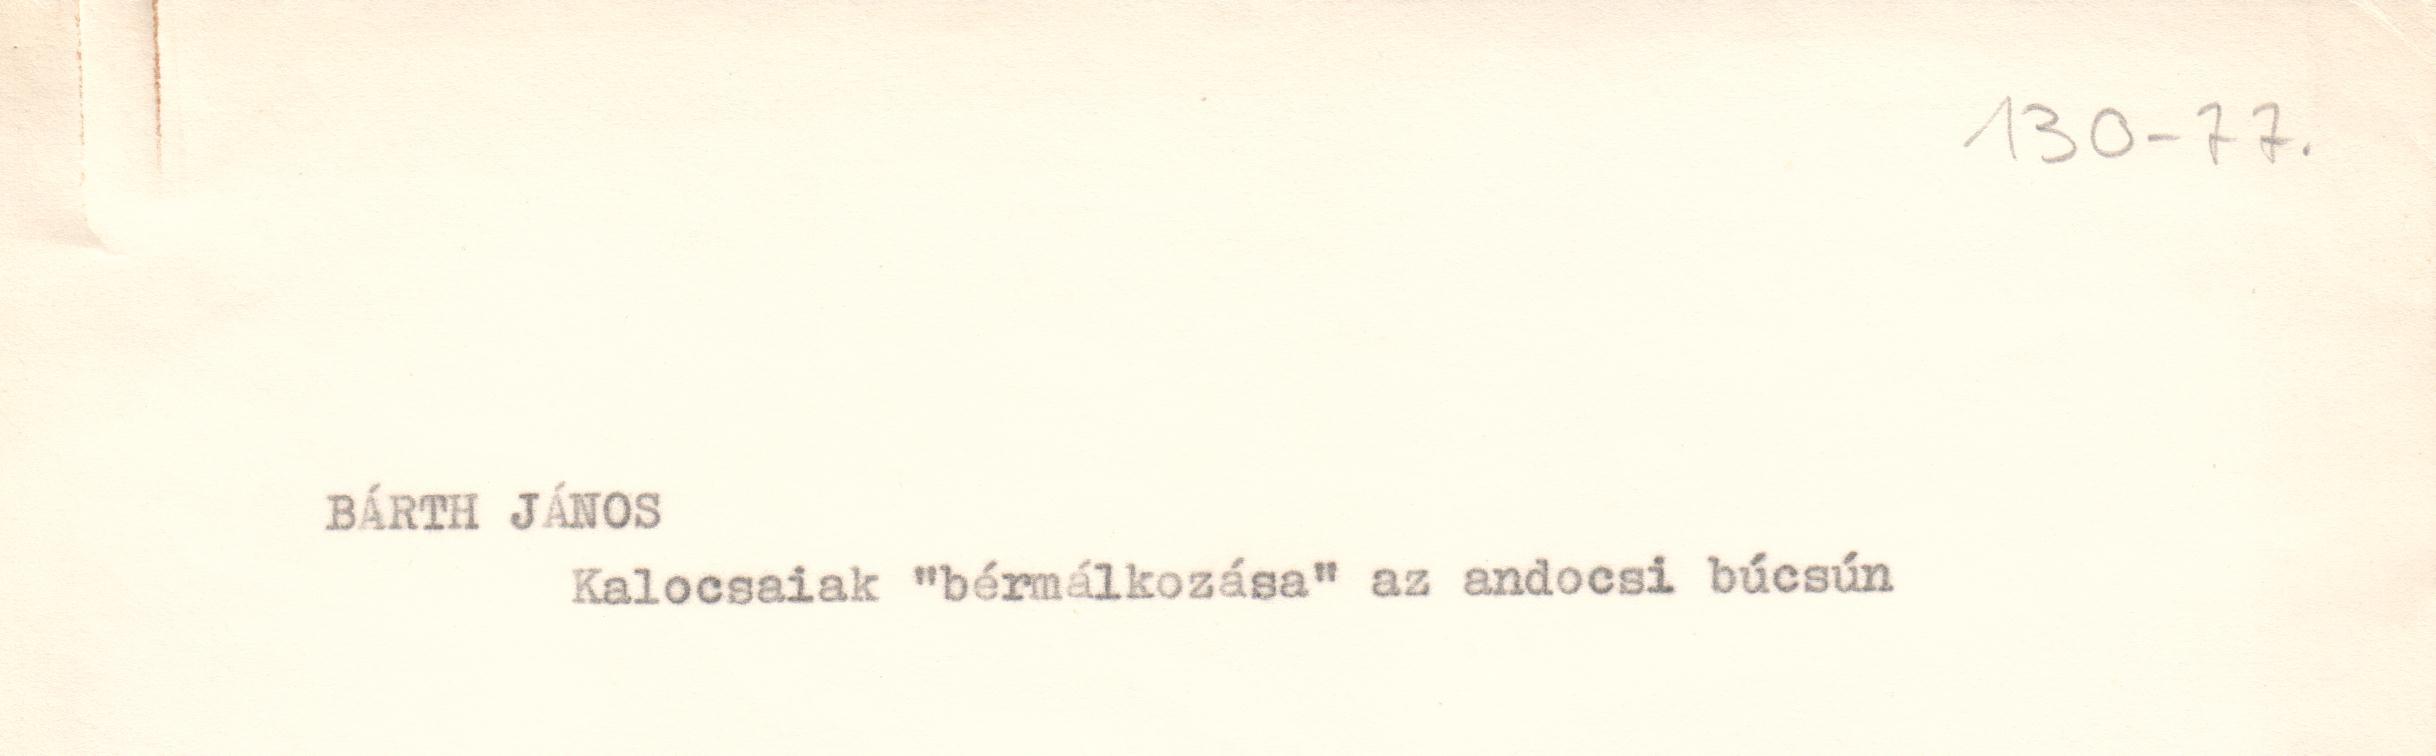 Kalocsaiak "bérmálkozása az andocsi búcsún c. cikk gépirata. (Viski Károly Múzeum Kalocsa RR-F)